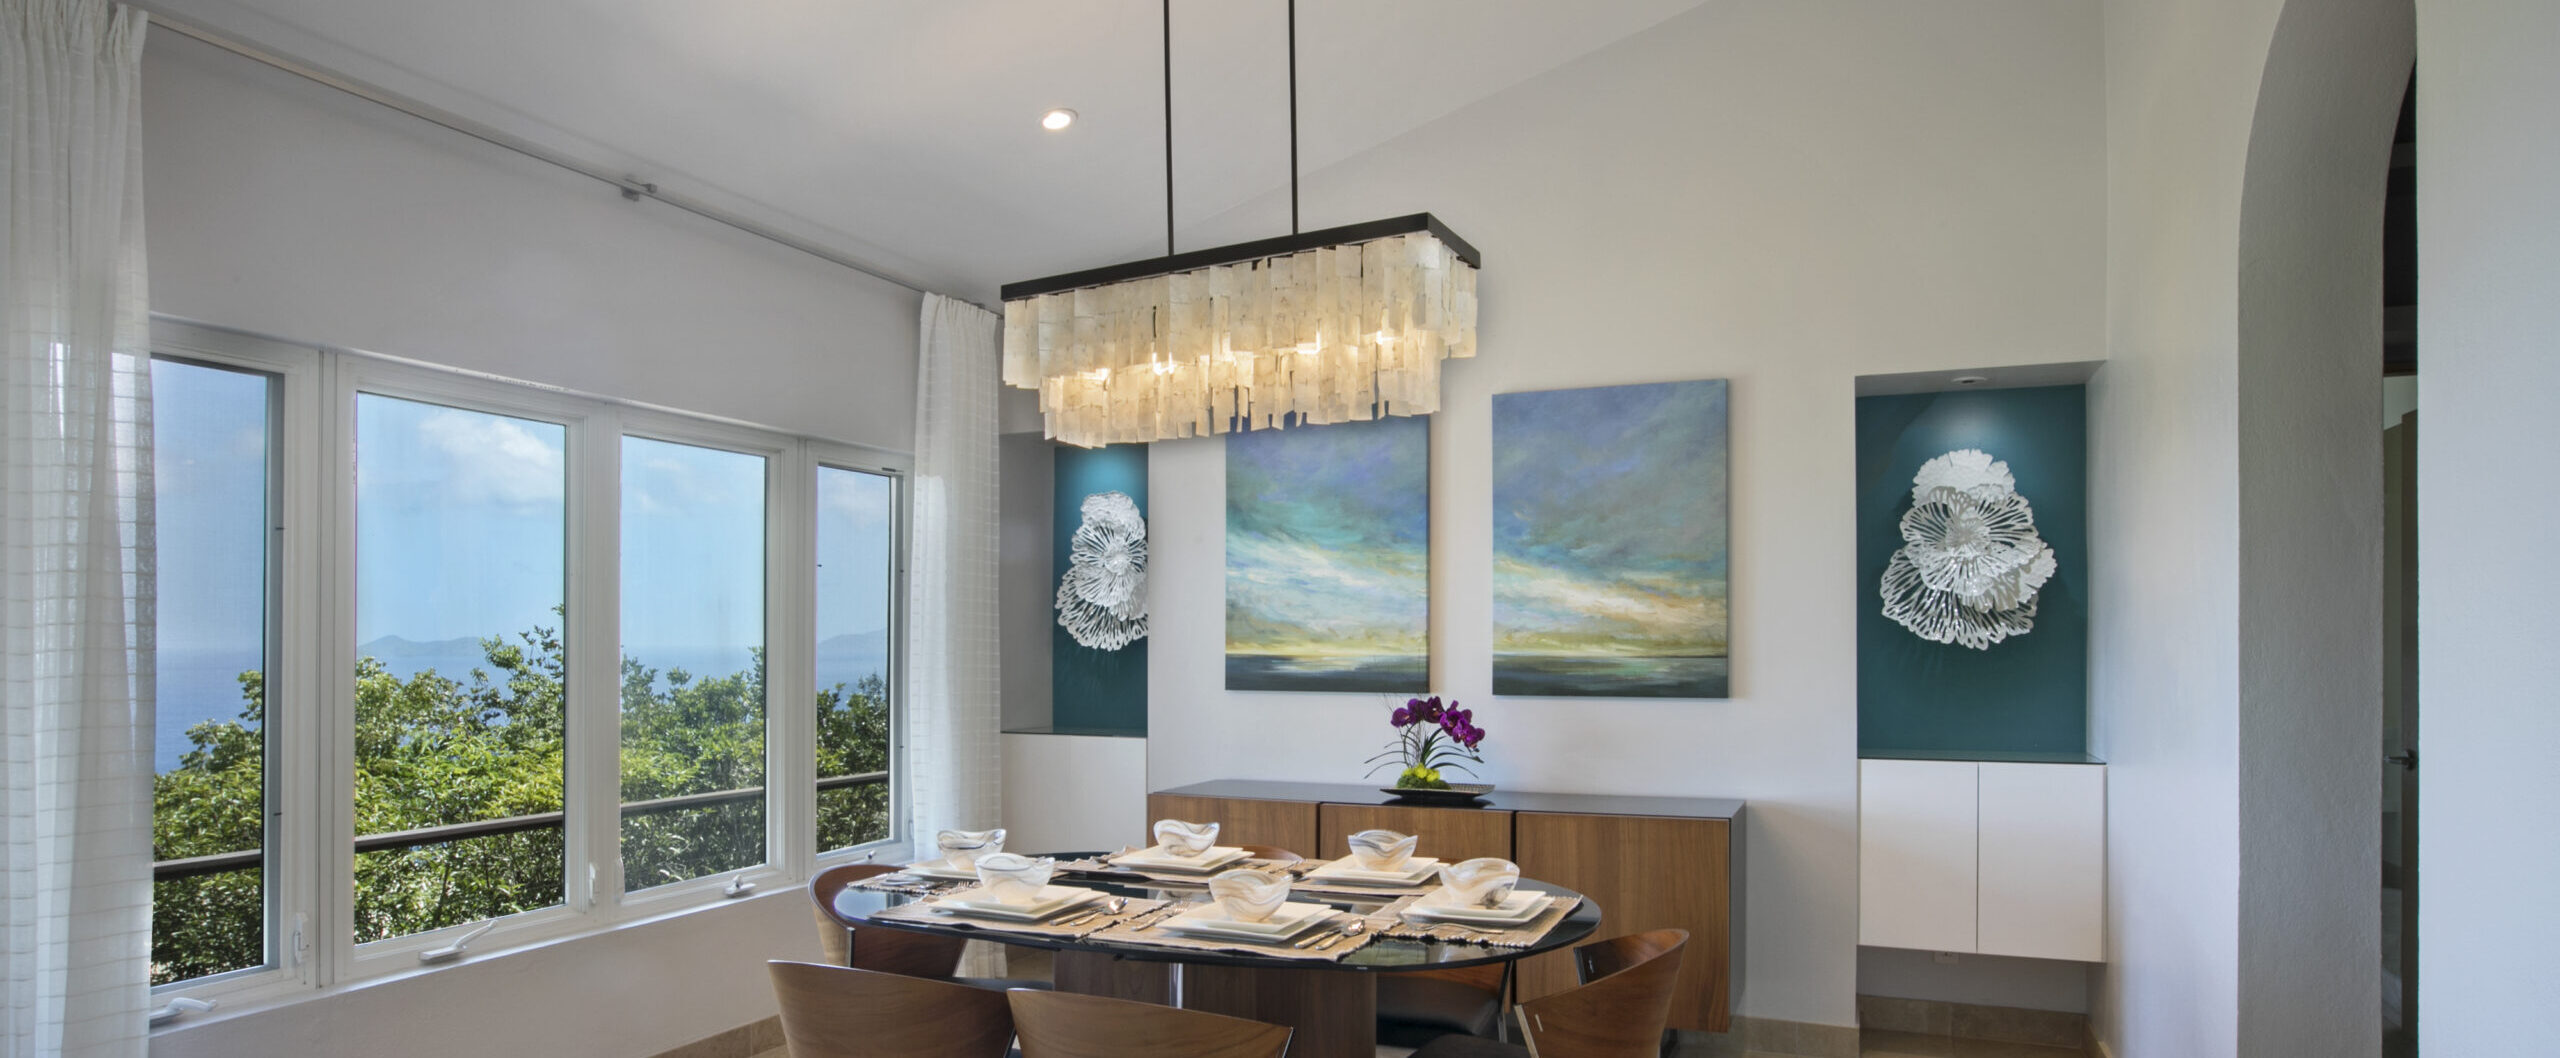 dining room design with chandelier and landscape artwork